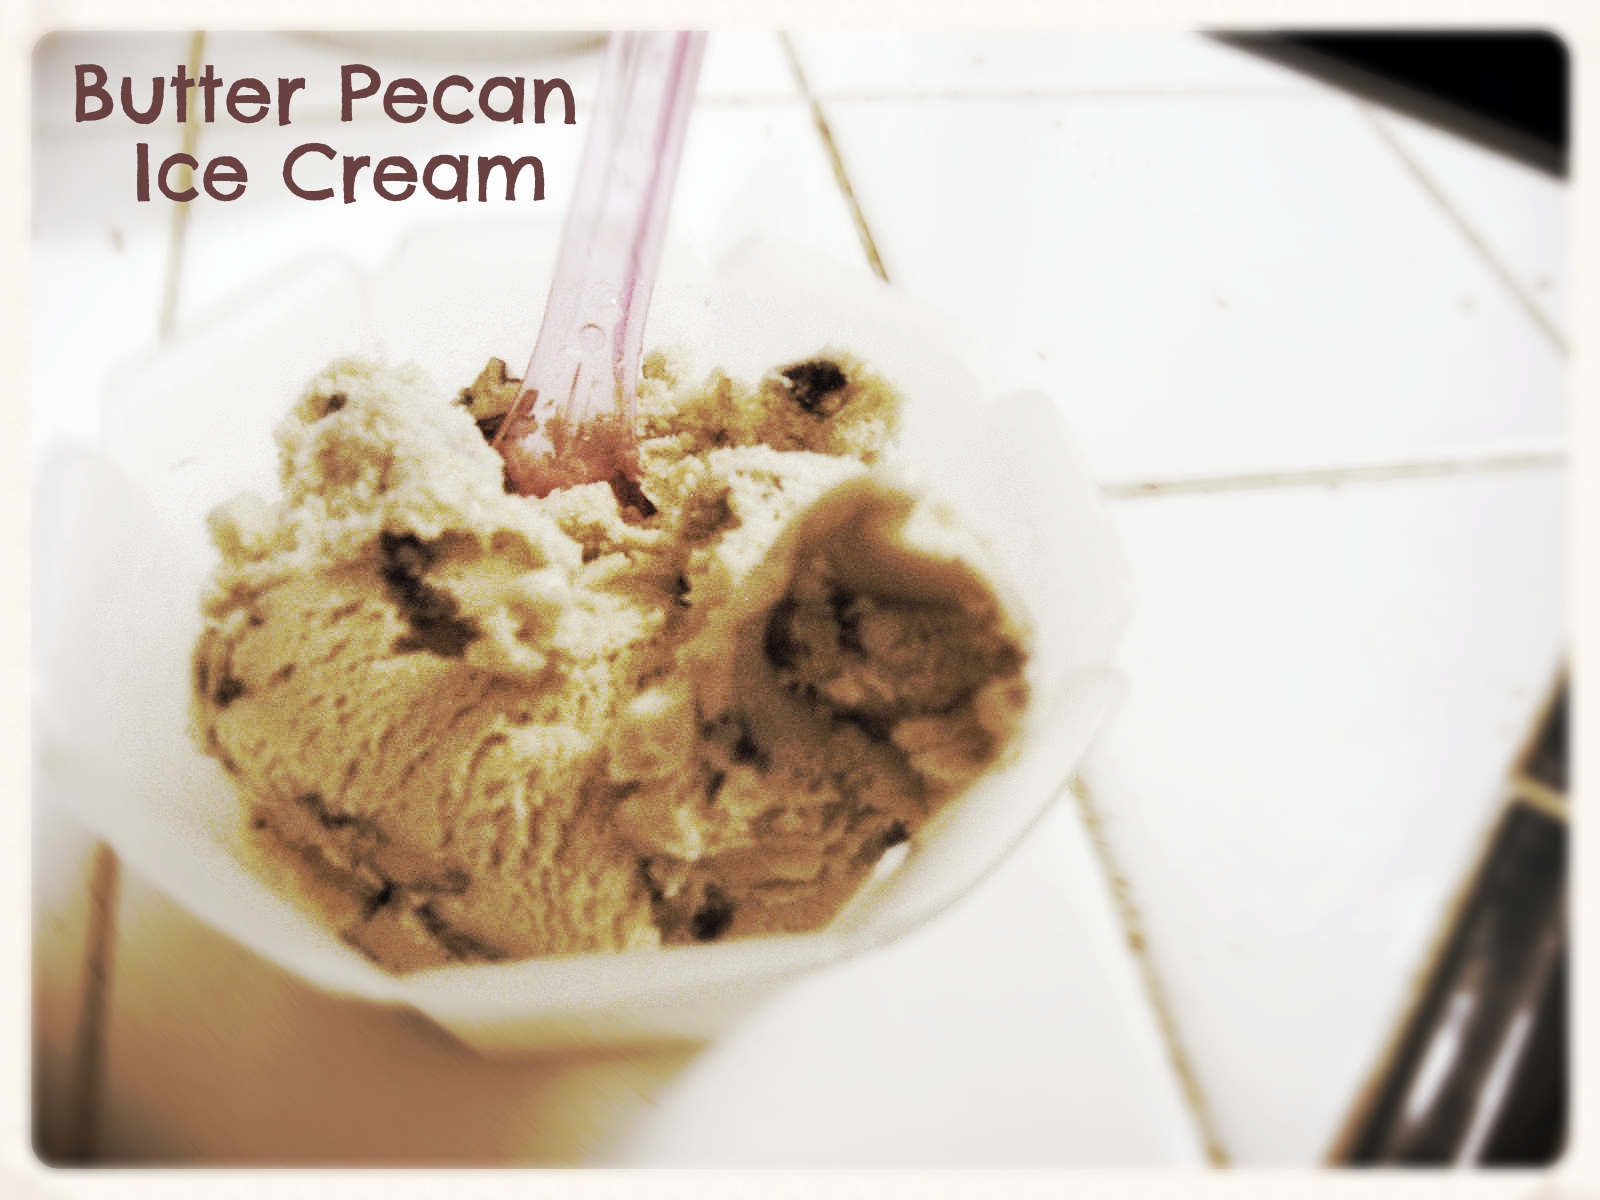 Butter Pecan Ice Cream by freshfromthe.com